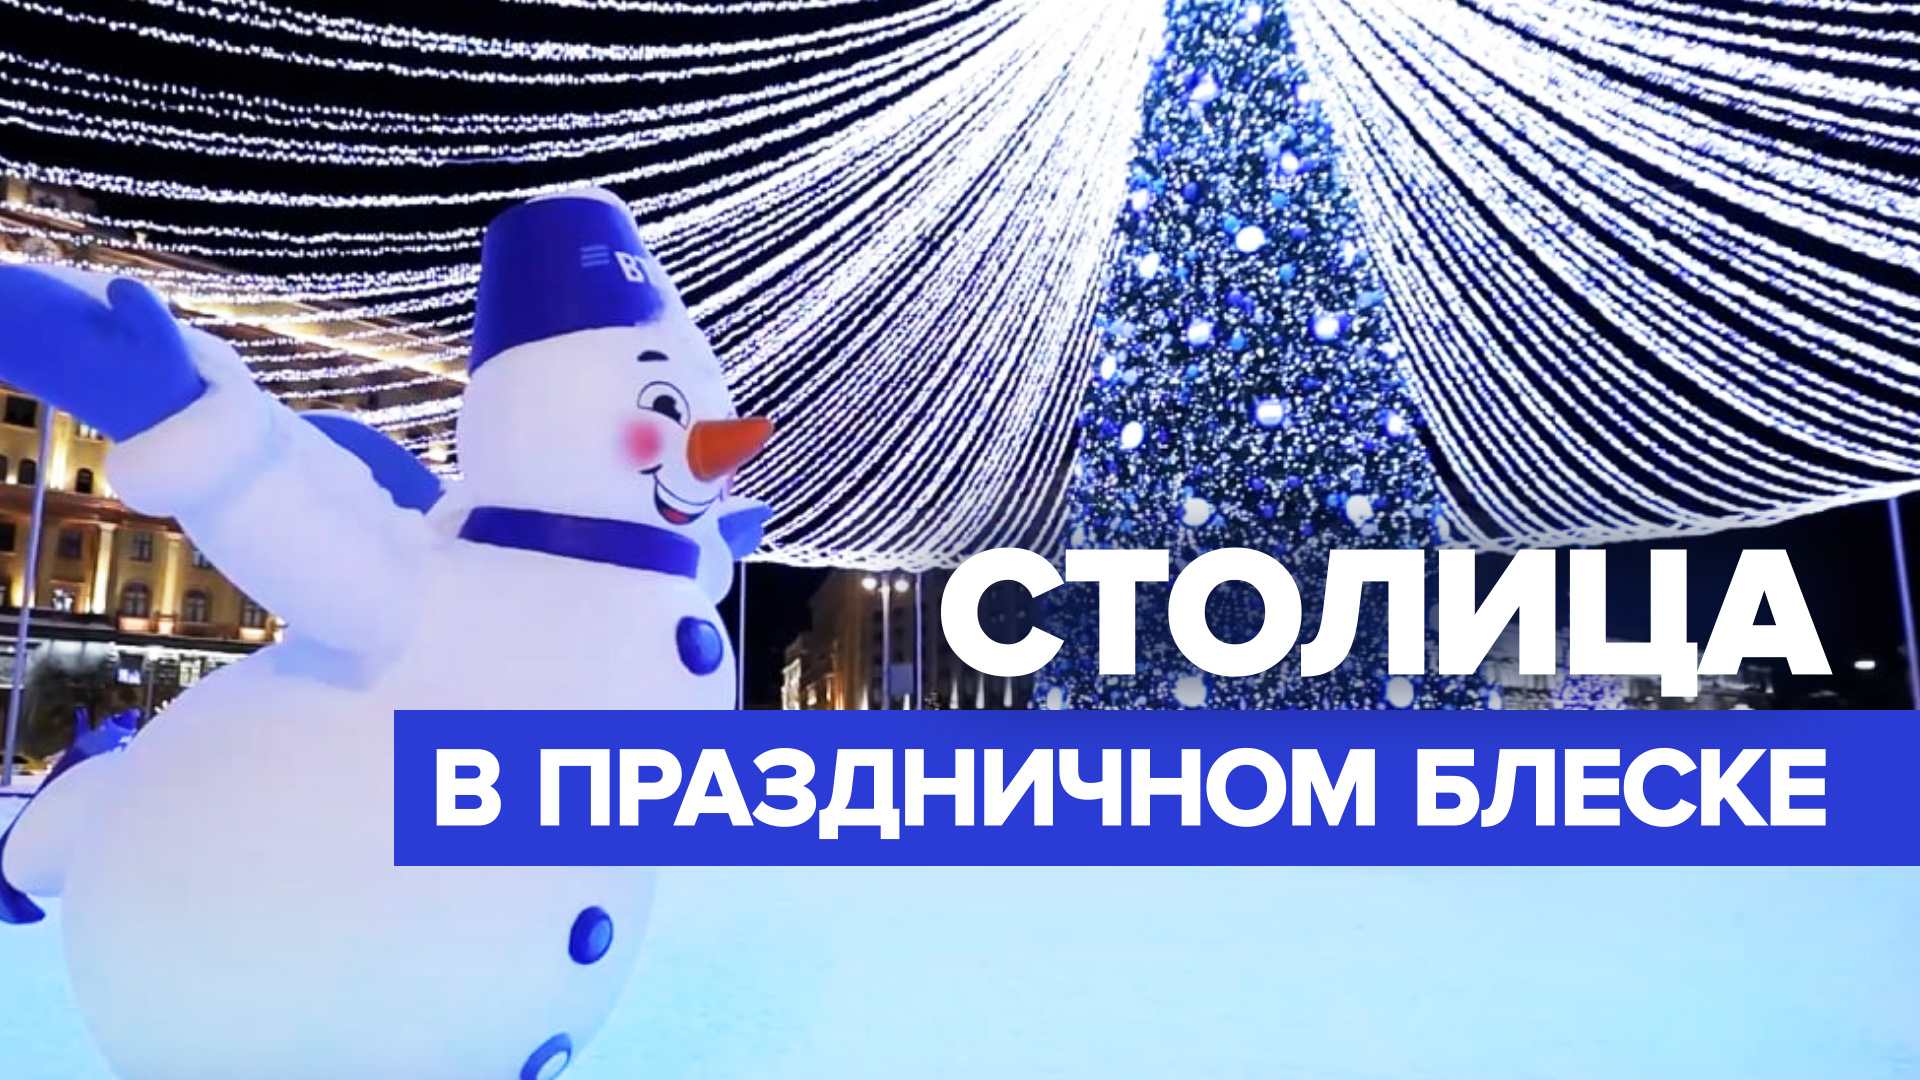 Тысячи ёлок и километры гирлянд: Москва готовится к Новому году